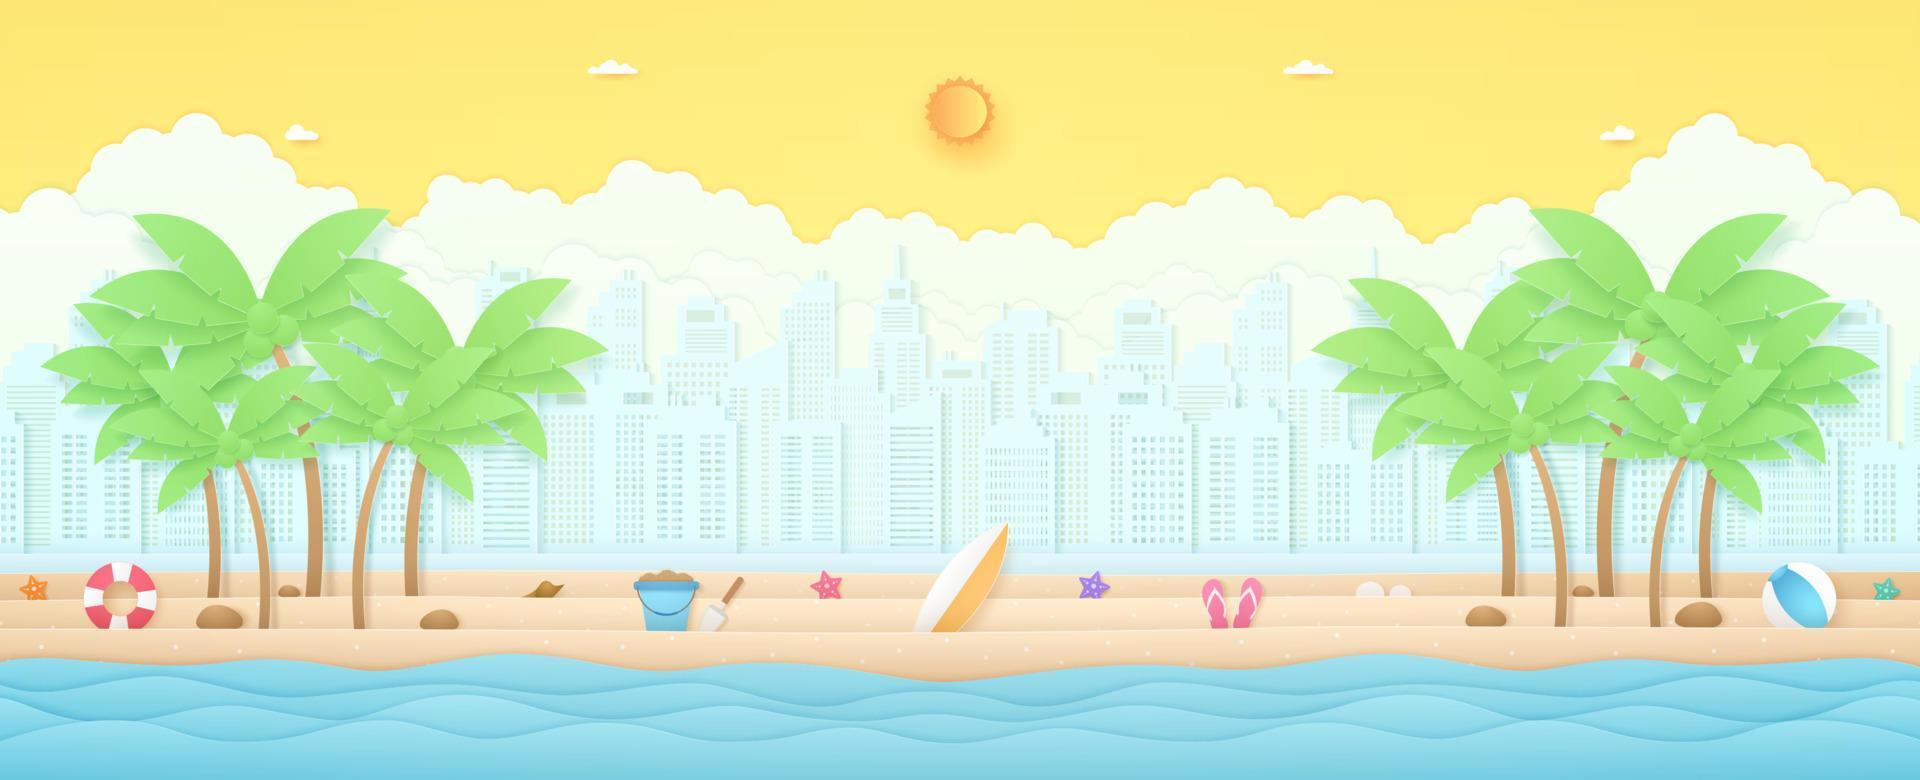 zomertijd, tropisch landschap, golvende zee met kokospalmen en zomerspullen op strand, stadsgezicht en wolkenachtergrond, felle zon en zonnige hemel, papierkunststijl vector